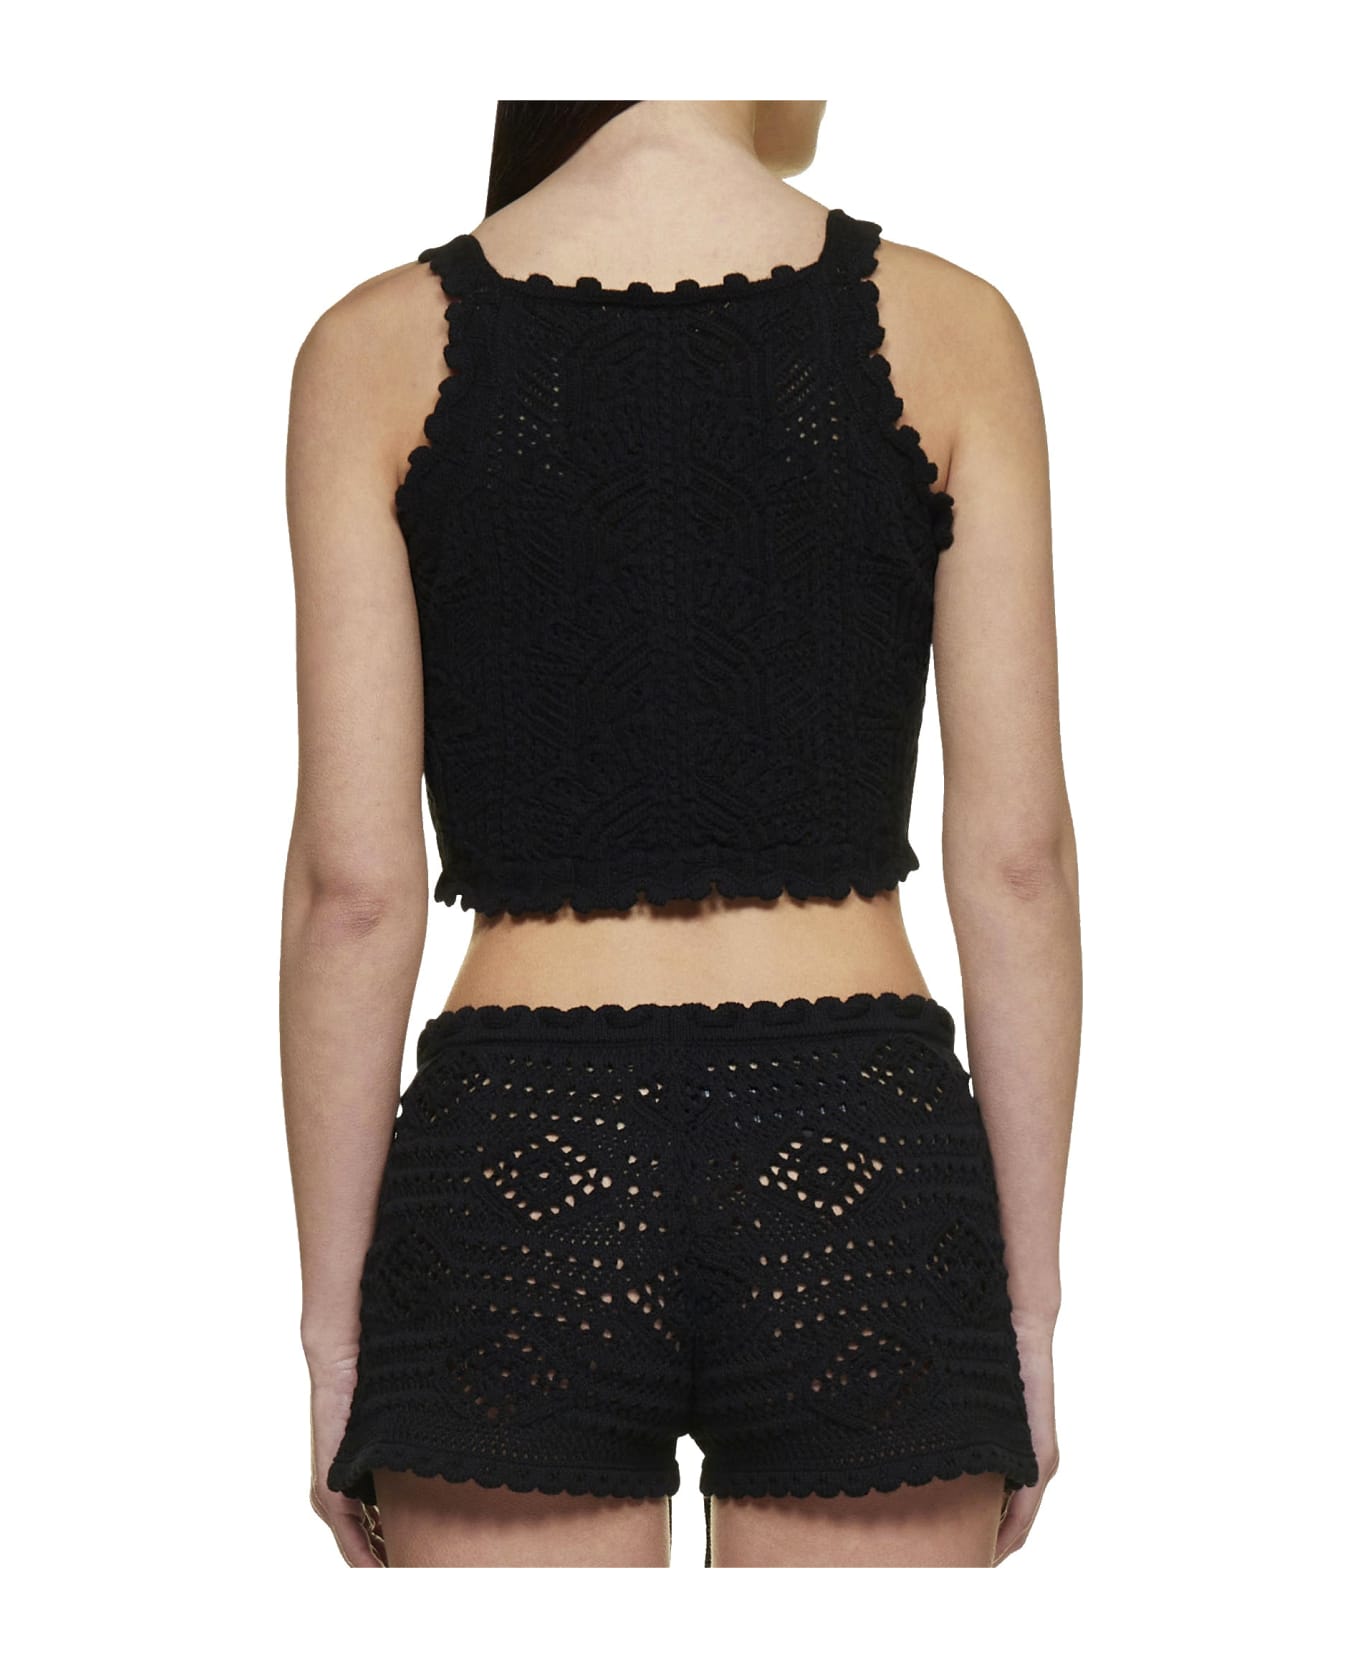 Saint Laurent Crochet Knit Top - Black